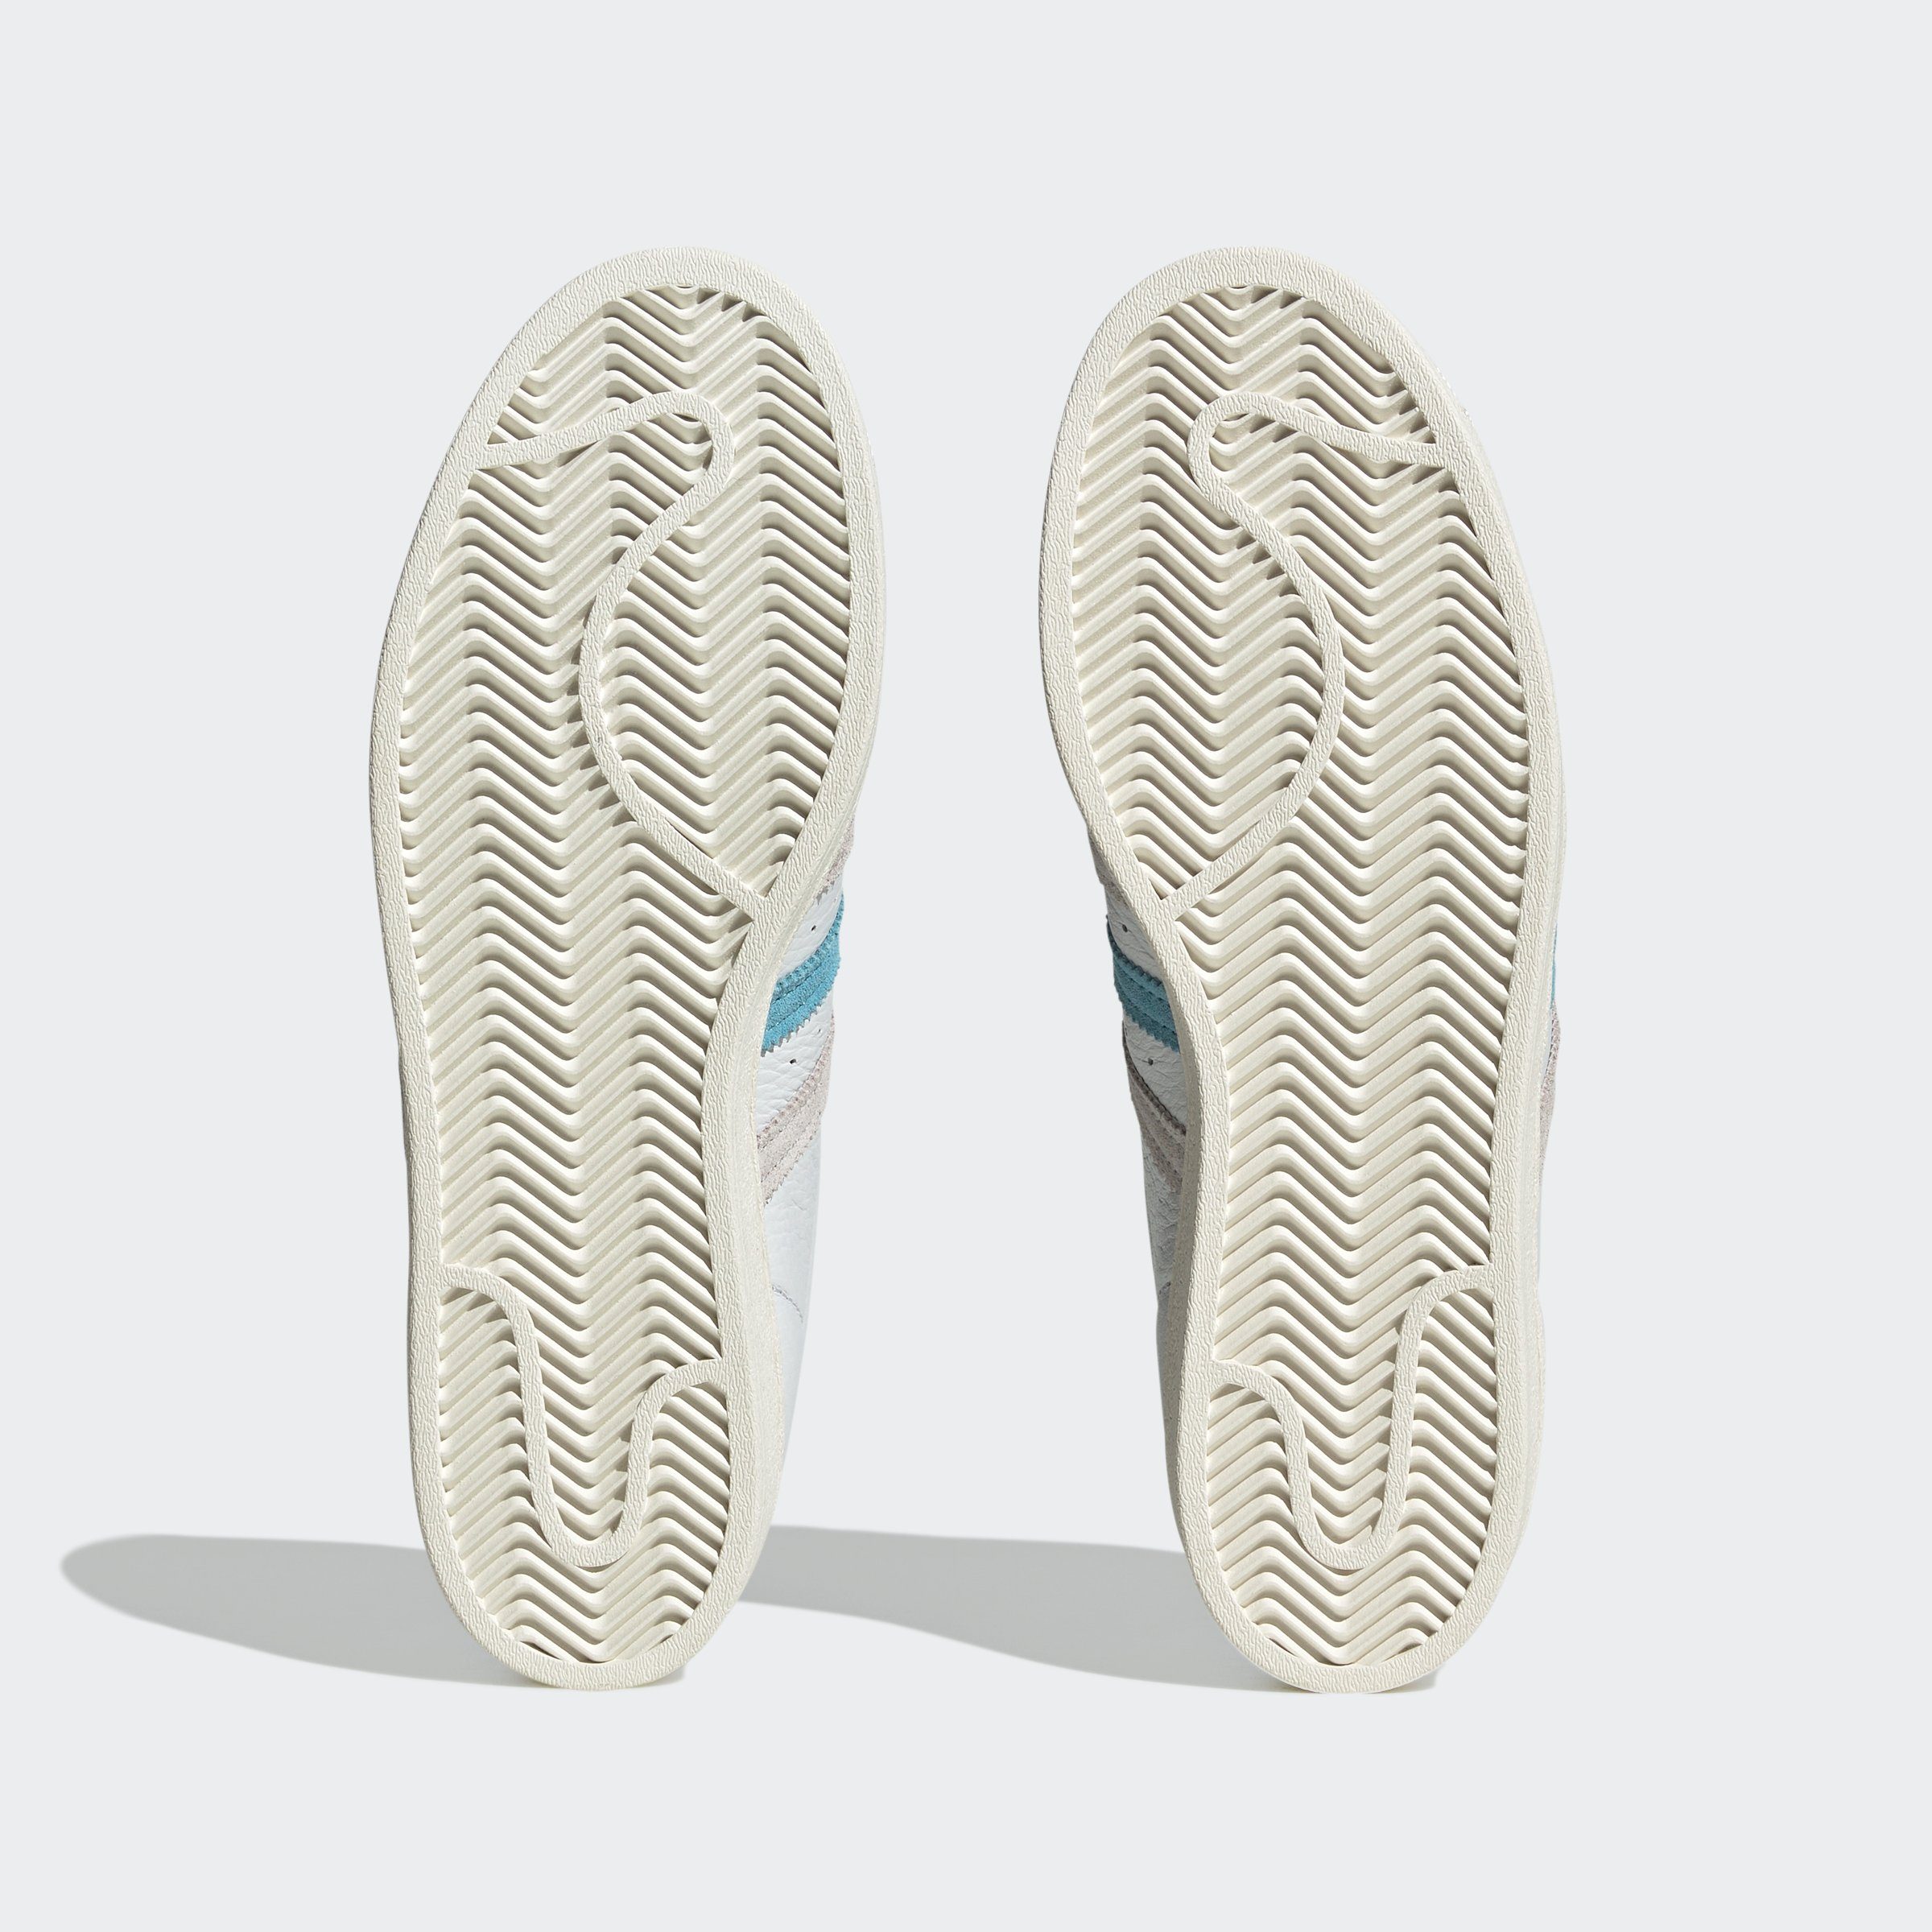 adidas Originals One White SUPERSTAR Preloved Sneaker / Grey Cream Blue 